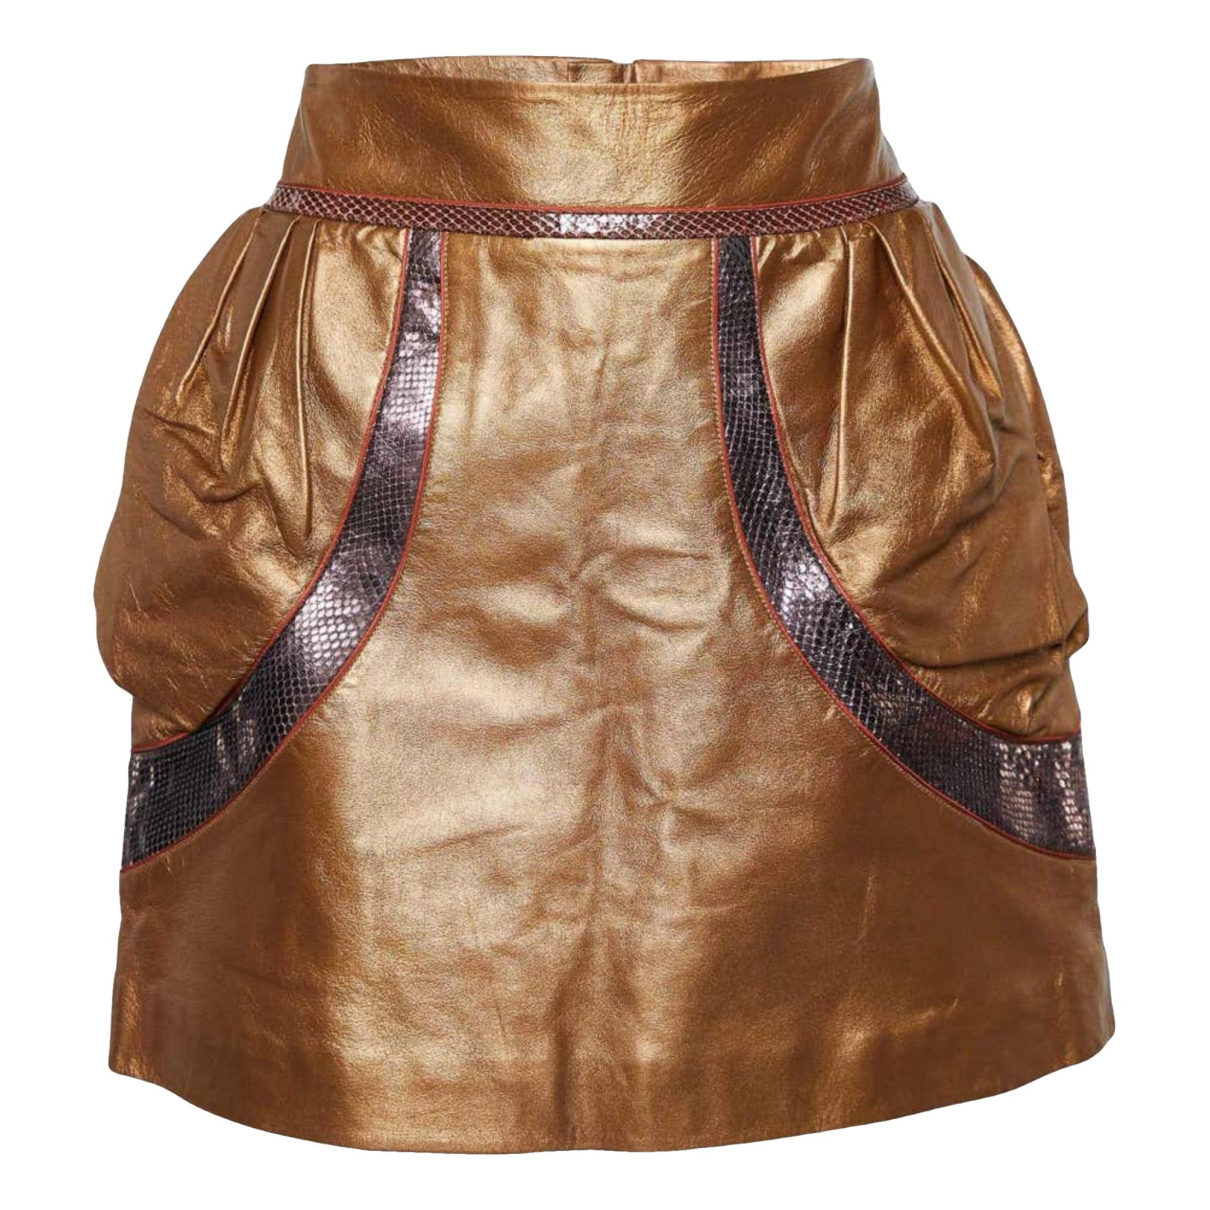 Louis Vuitton Yayoi Kusama Infinity Dots Midi Skirt